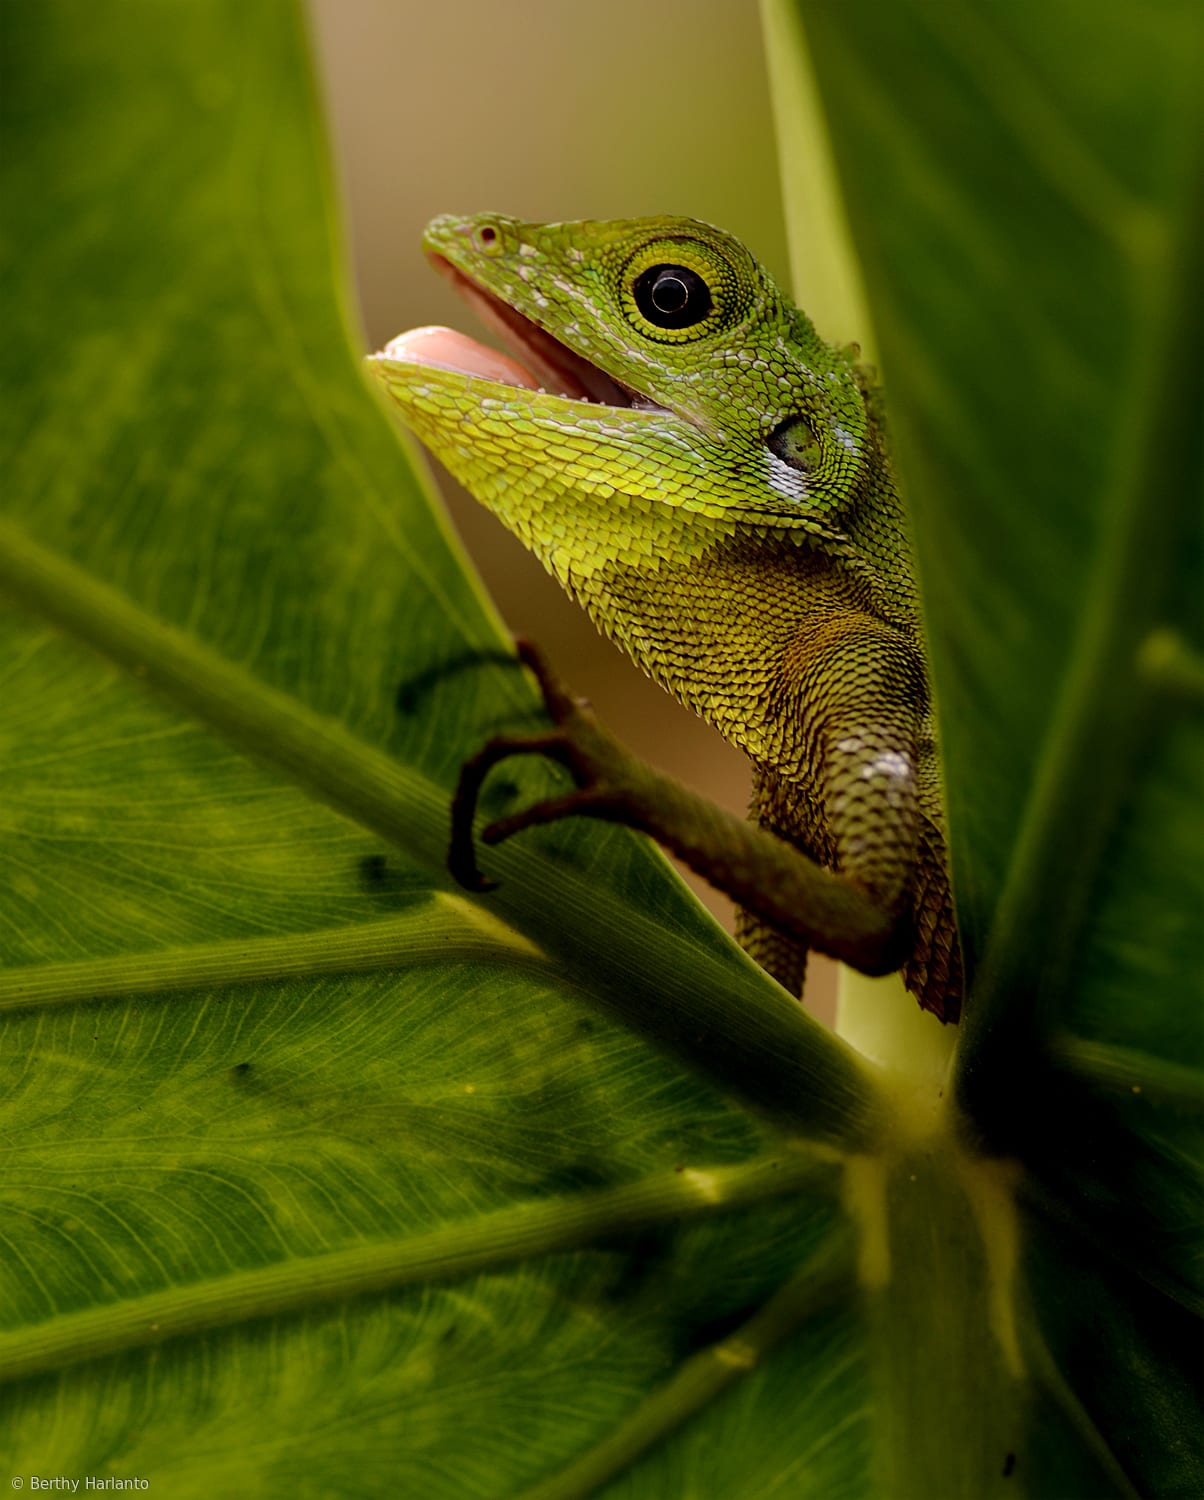 Borneo Chameleon